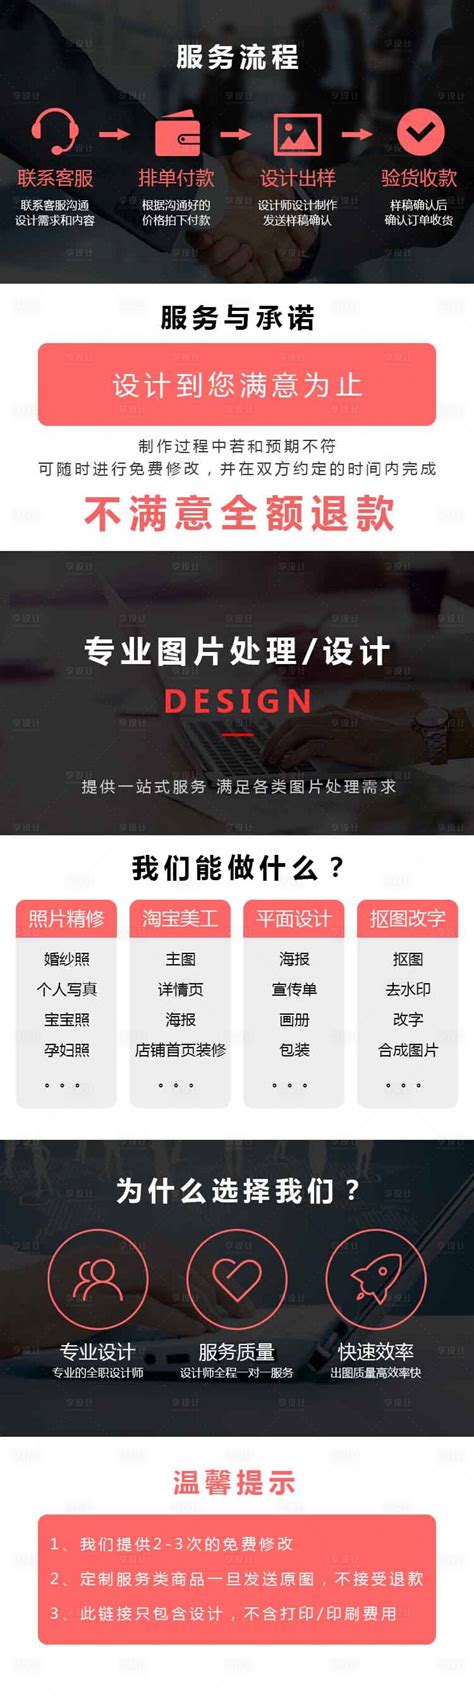 设计师店铺详情页PSD电商设计素材海报模板免费下载-享设计